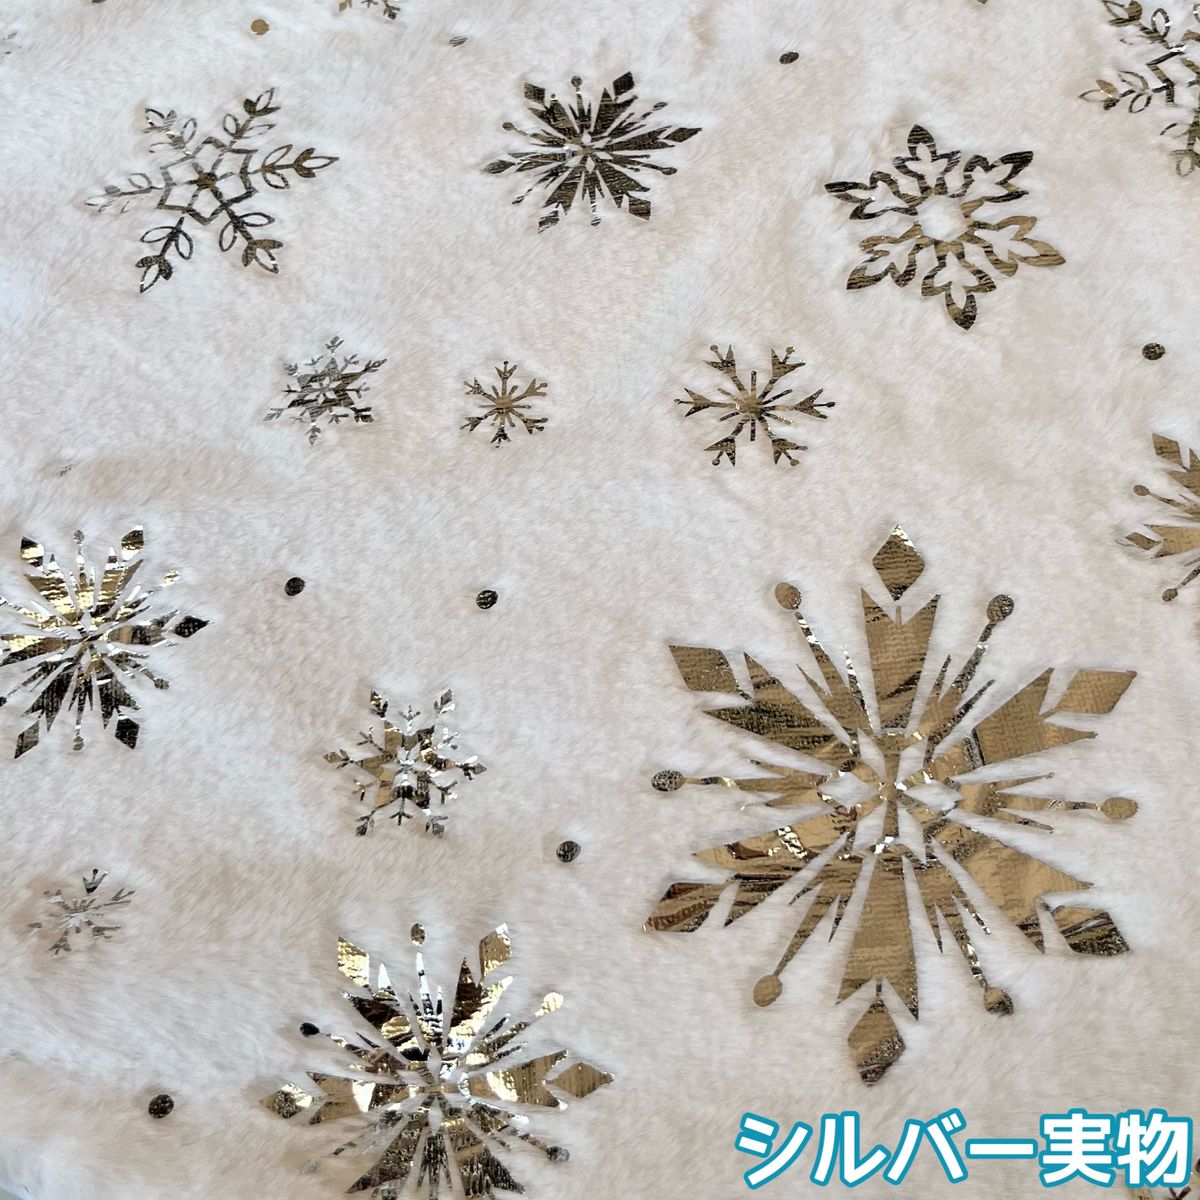 ツリースカート 78cm クリスマスツリー 足元隠し 装飾 ツリーマット シルバー 銀 白 プレゼント 雪 結晶 インテリア